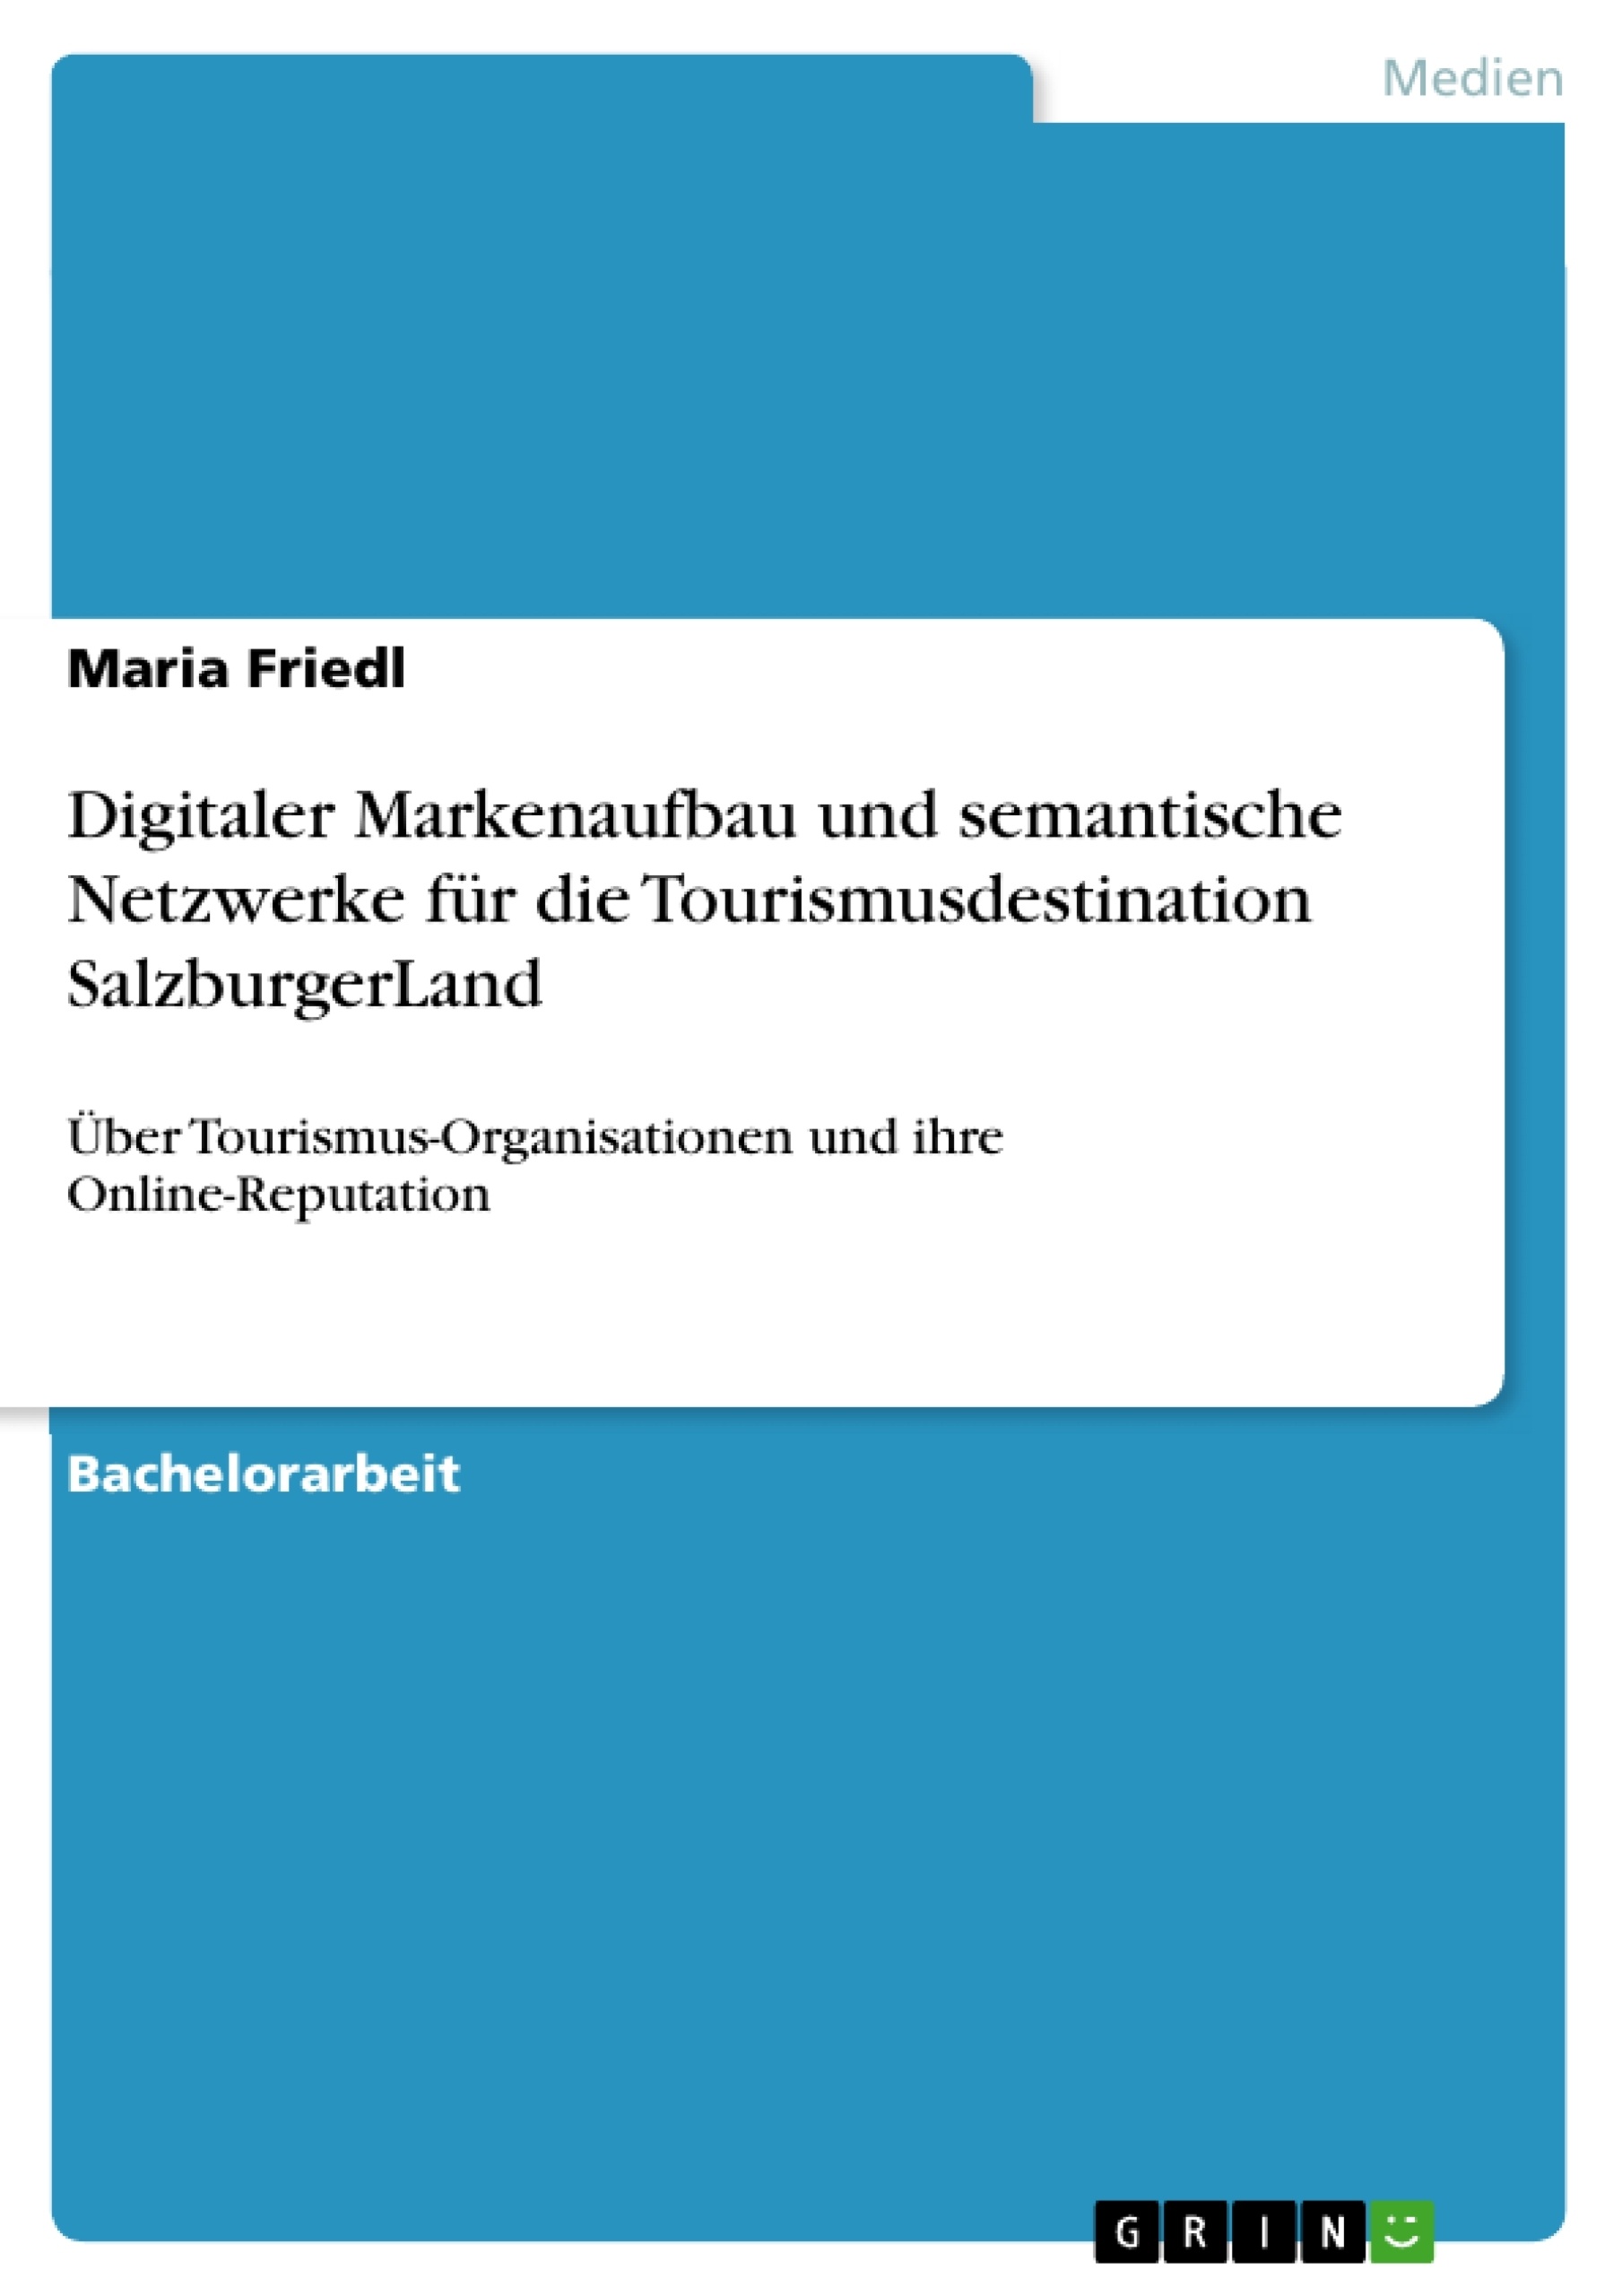 Title: Digitaler Markenaufbau und semantische Netzwerke für die Tourismusdestination SalzburgerLand